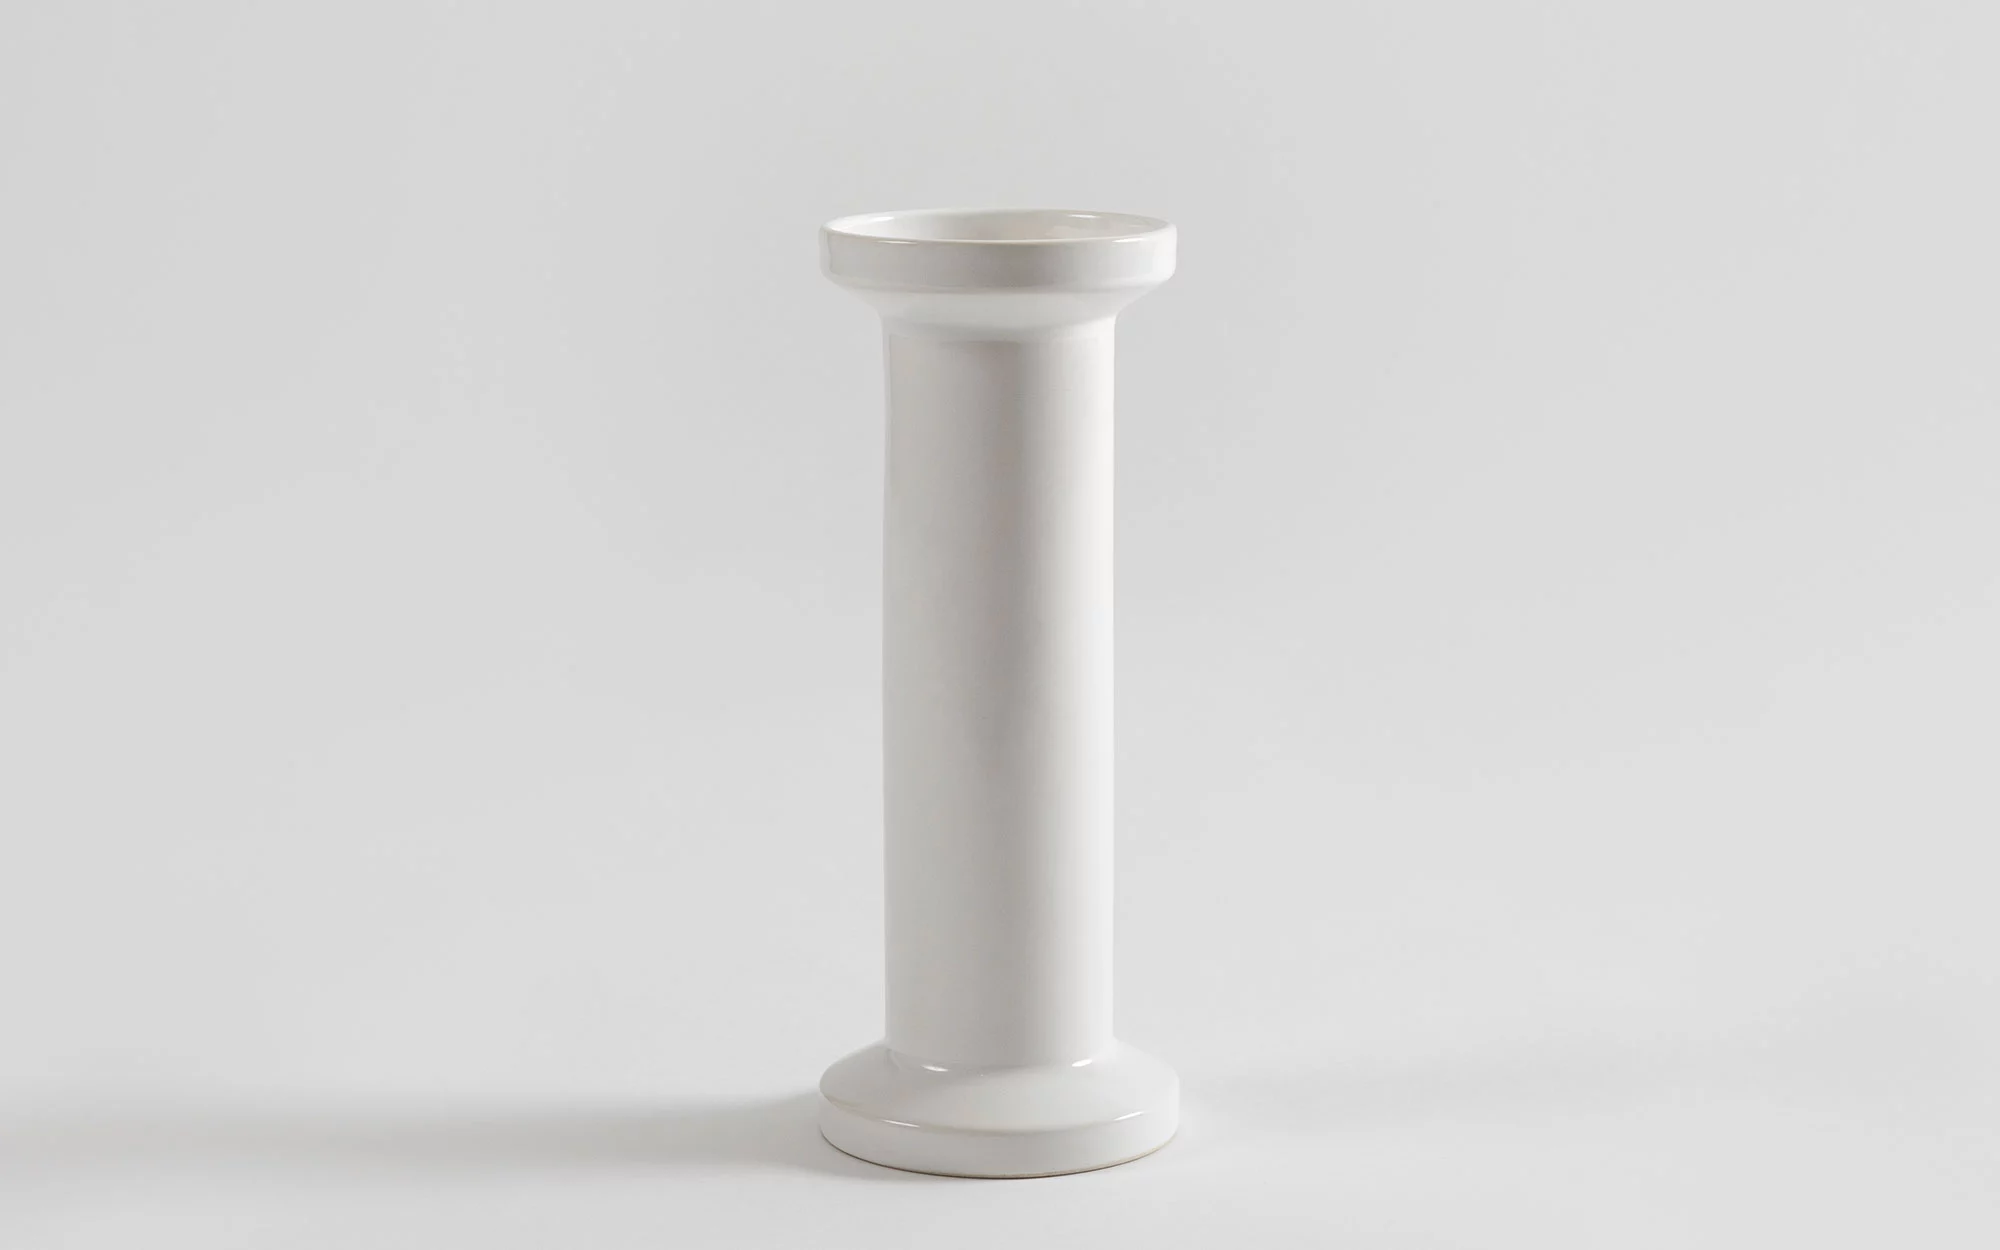 Vase - Jasper Morrison - Object - Galerie kreo